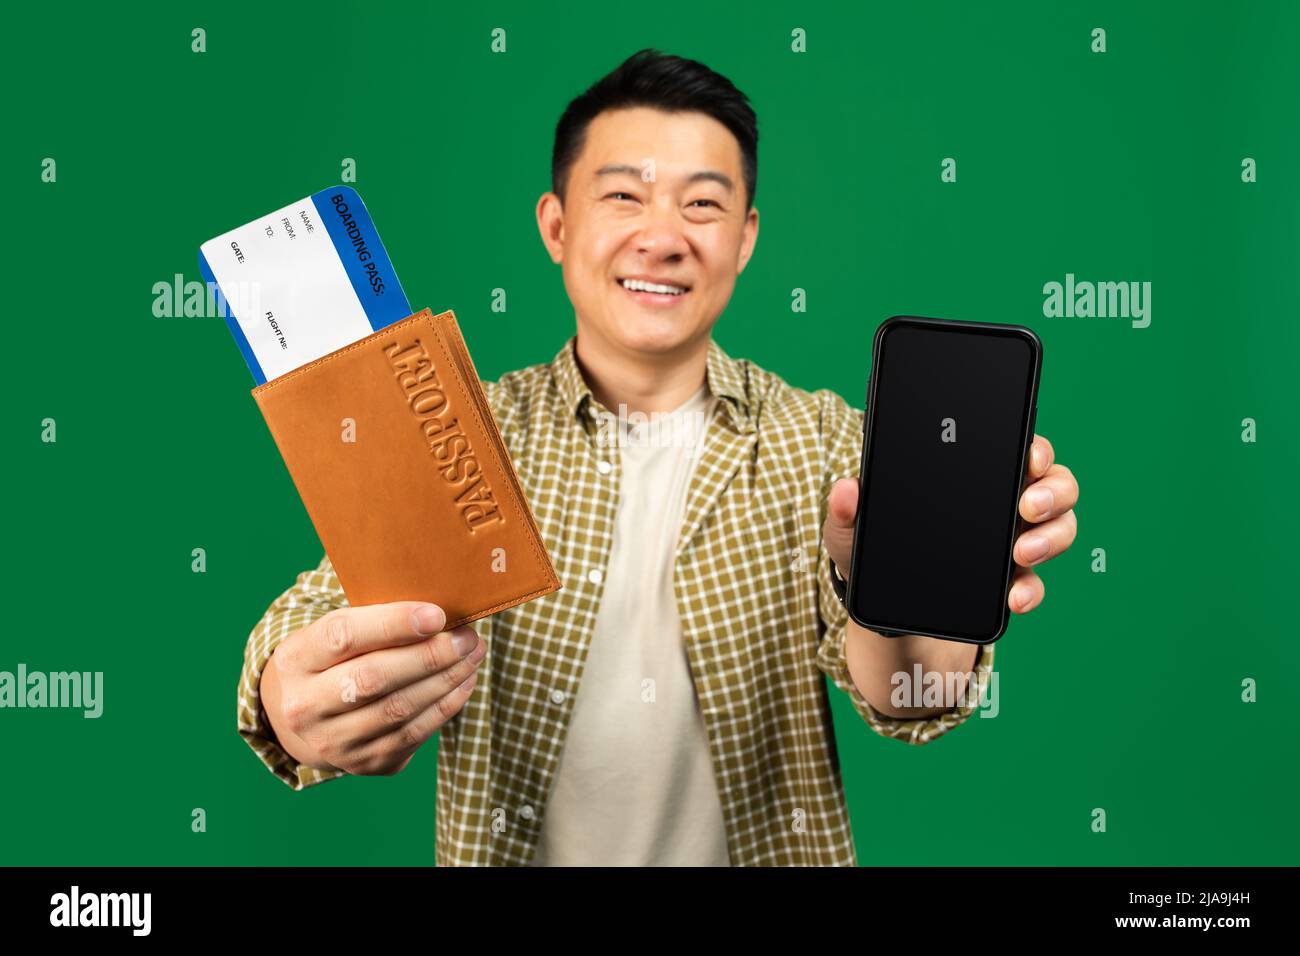 Joyeux homme asiatique tenant un téléphone portable avec écran vierge et un passeport avec des billets, posant sur fond vert Banque D'Images